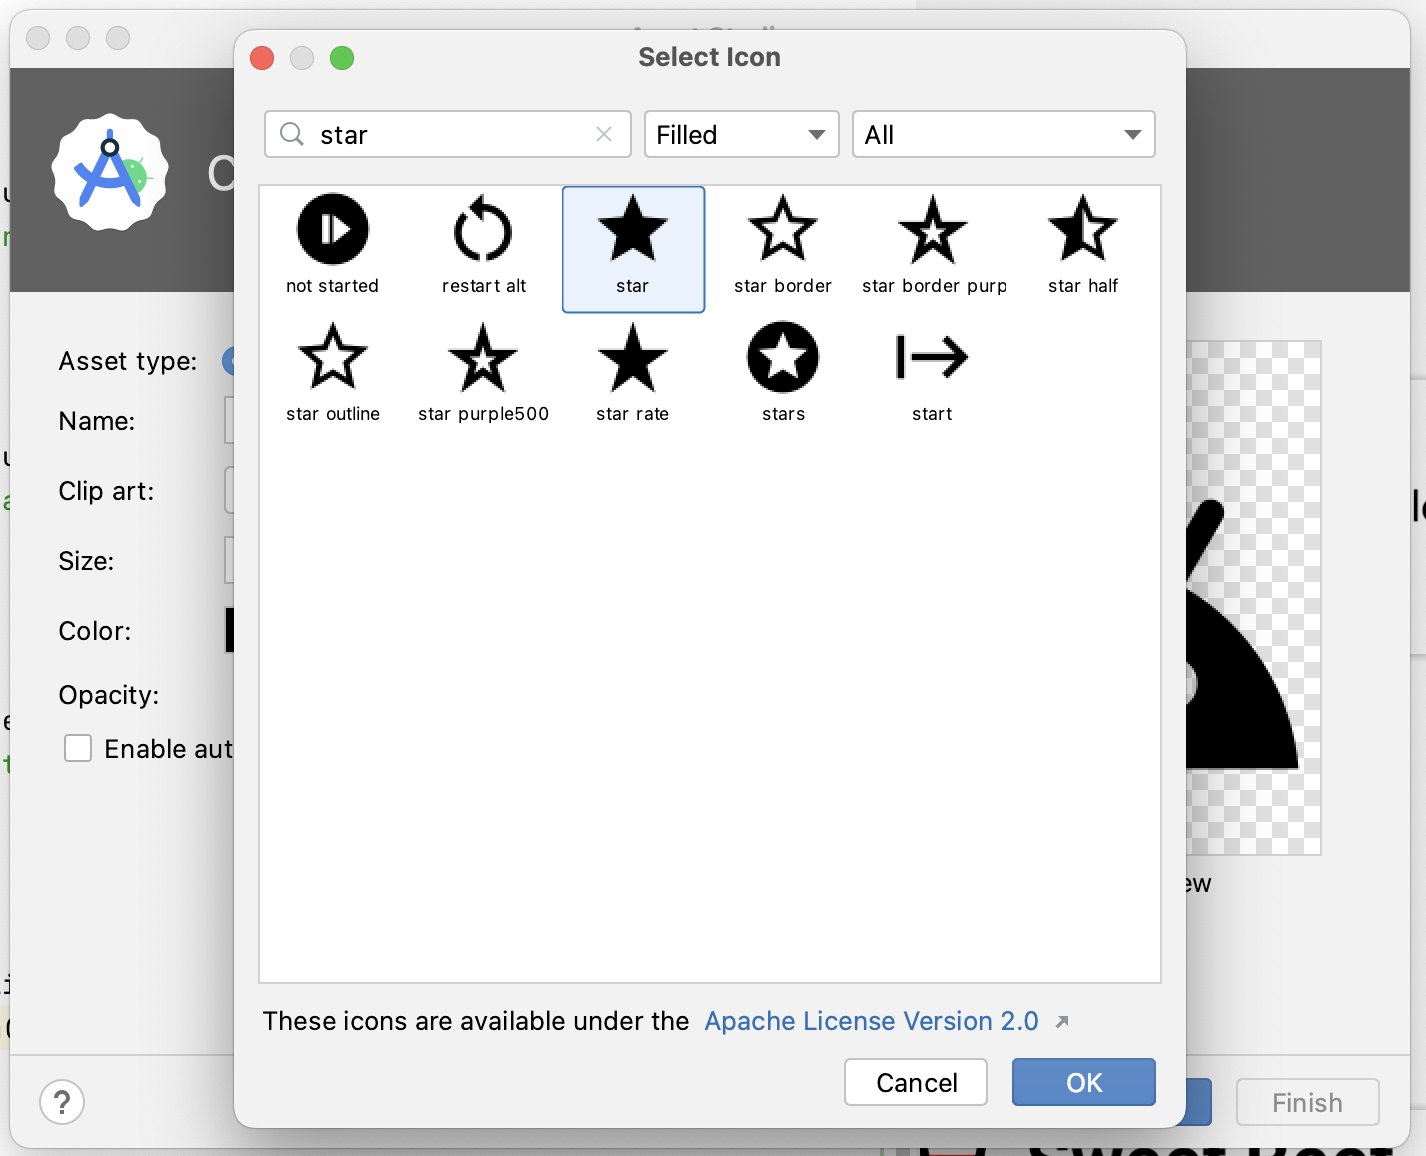 Caixa de diálogo "Select Icon" com ícone de início selecionado 